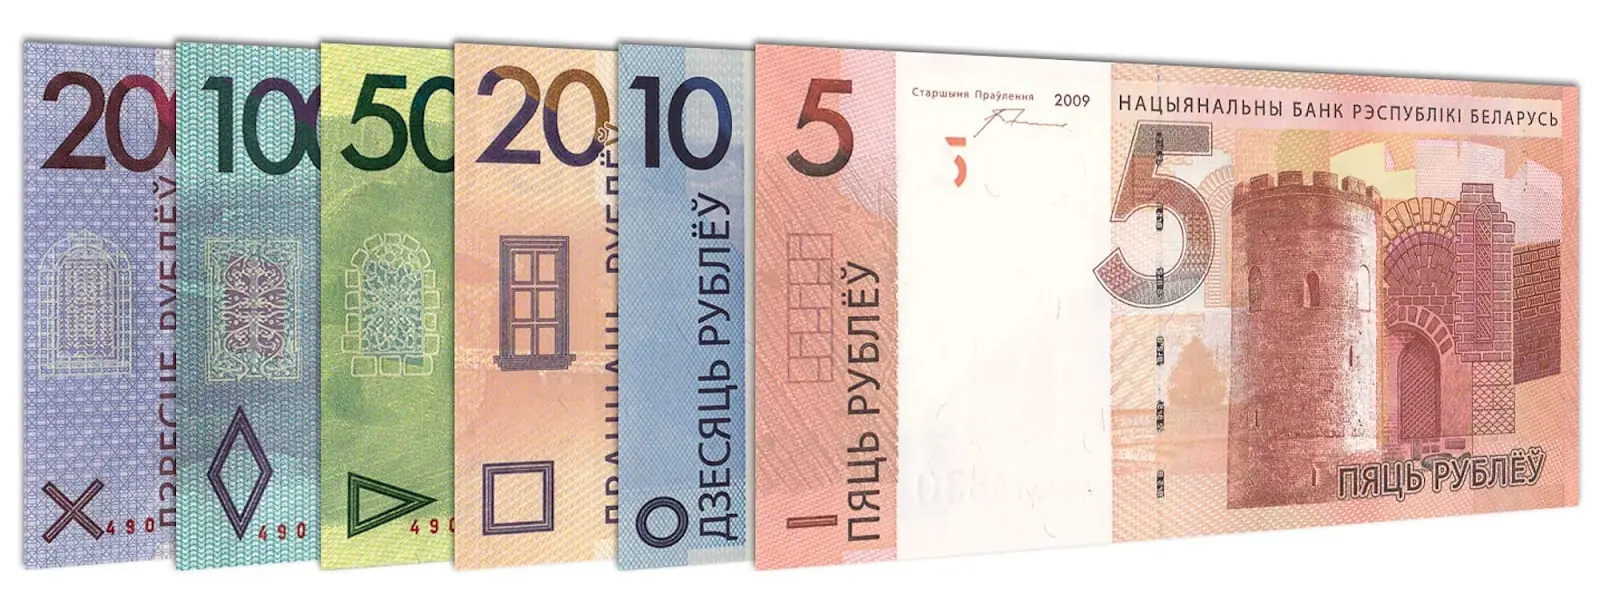 Belarus ruble banknote series 